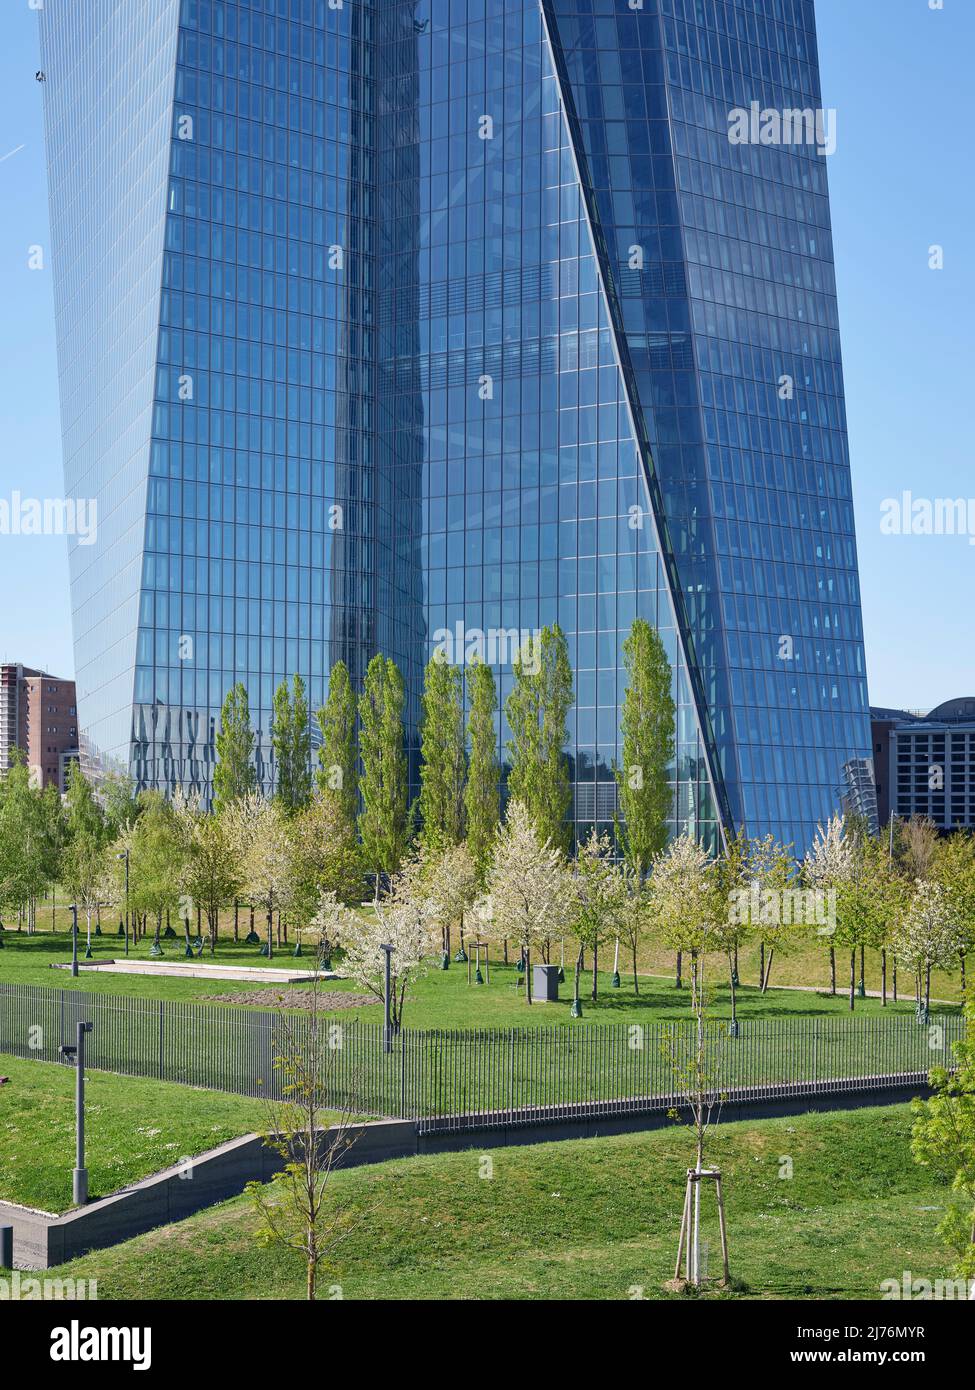 La primavera è arrivata nel giardino della Banca Centrale europea a Francoforte, con la BCE che torreggia sullo sfondo Foto Stock